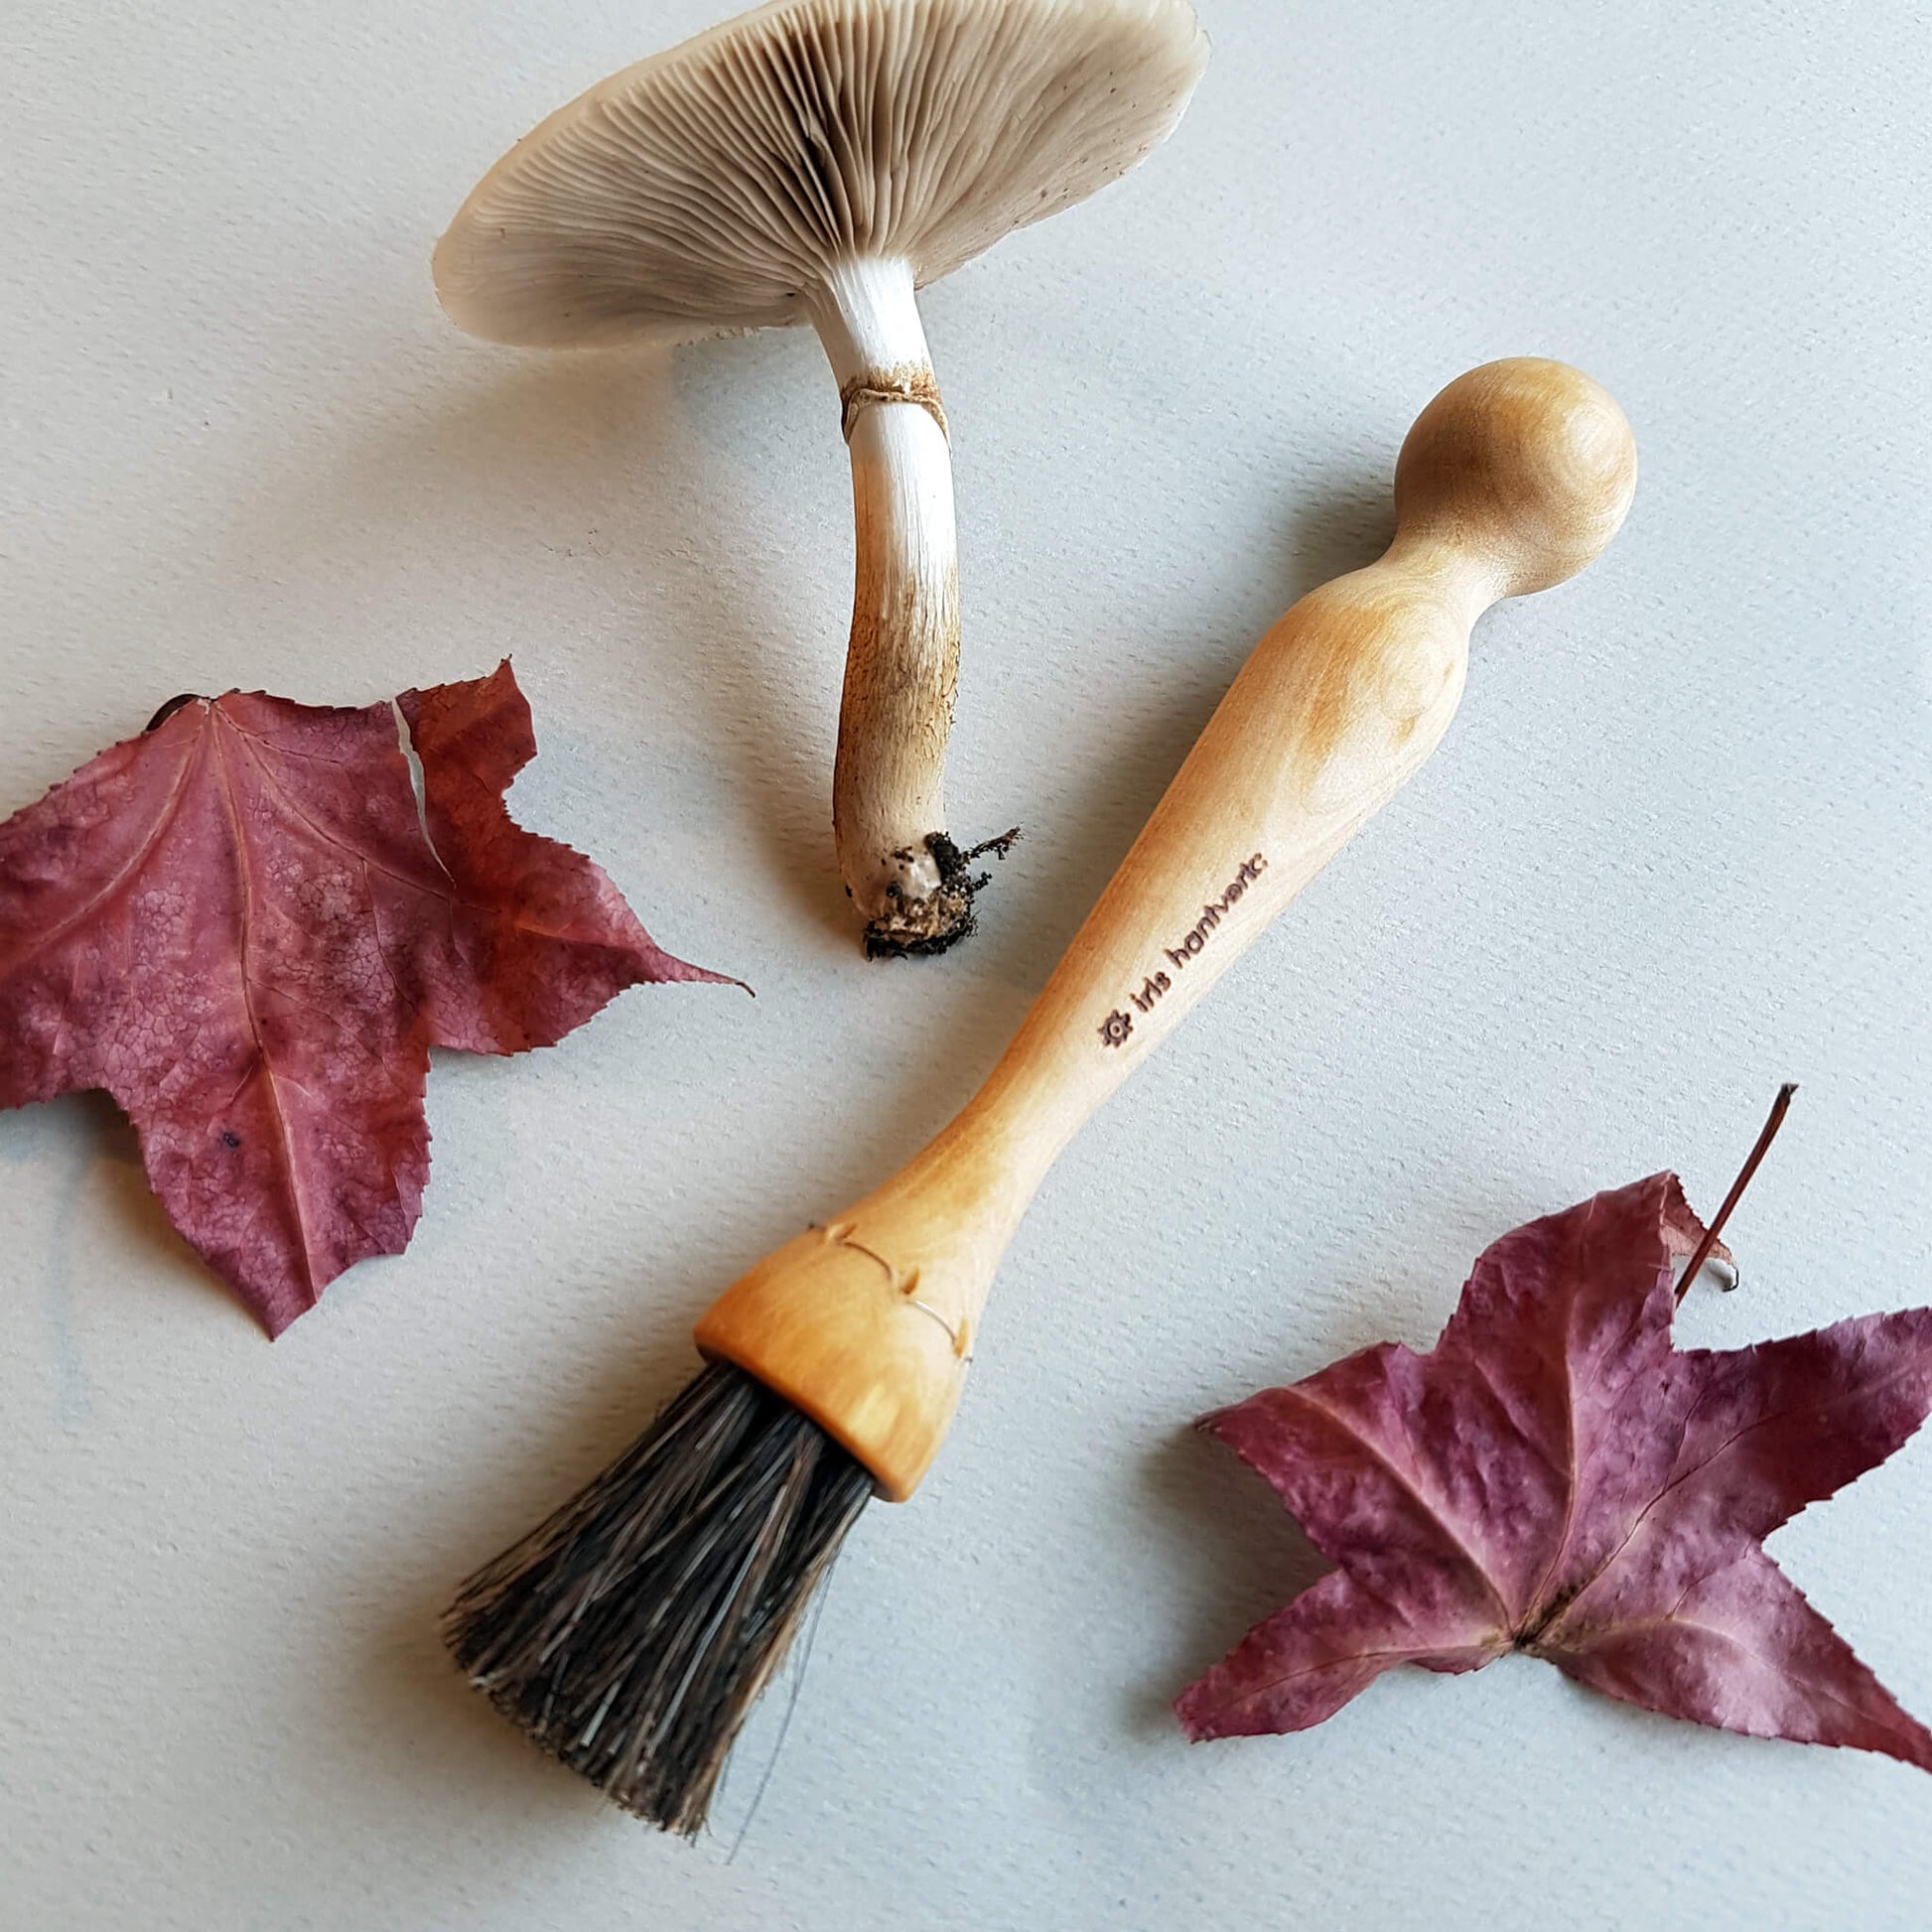 Iris Hantverk Mushroom Brush With Knife